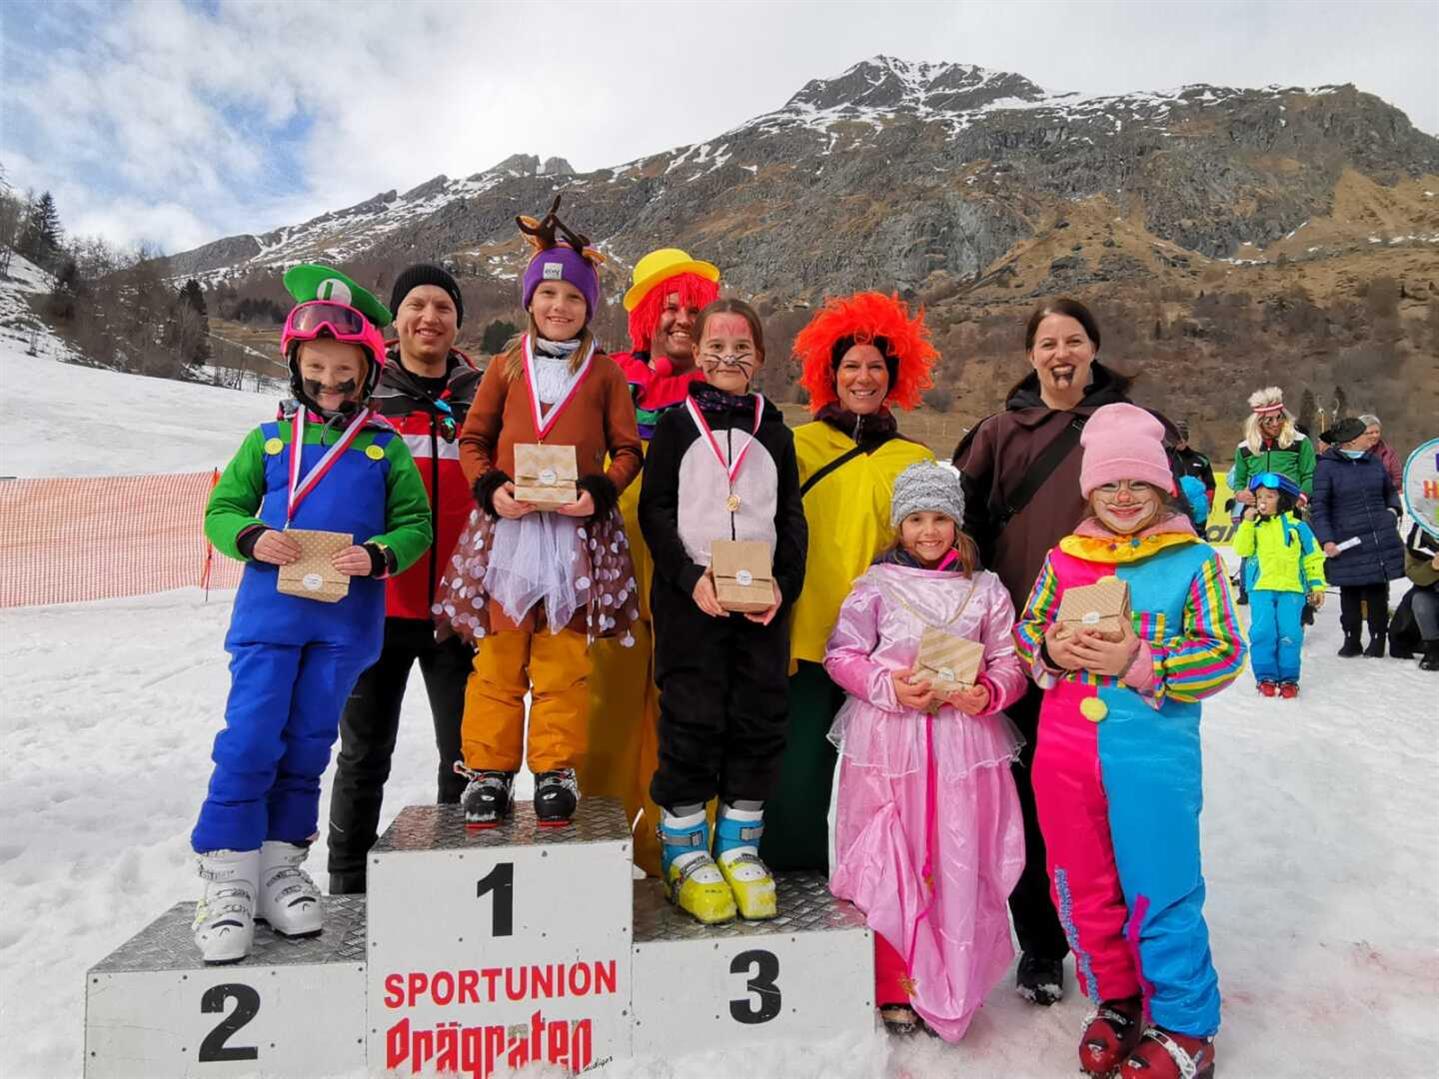 Eine Gruppe von Menschen posiert für ein Foto auf einem verschneiten Berg